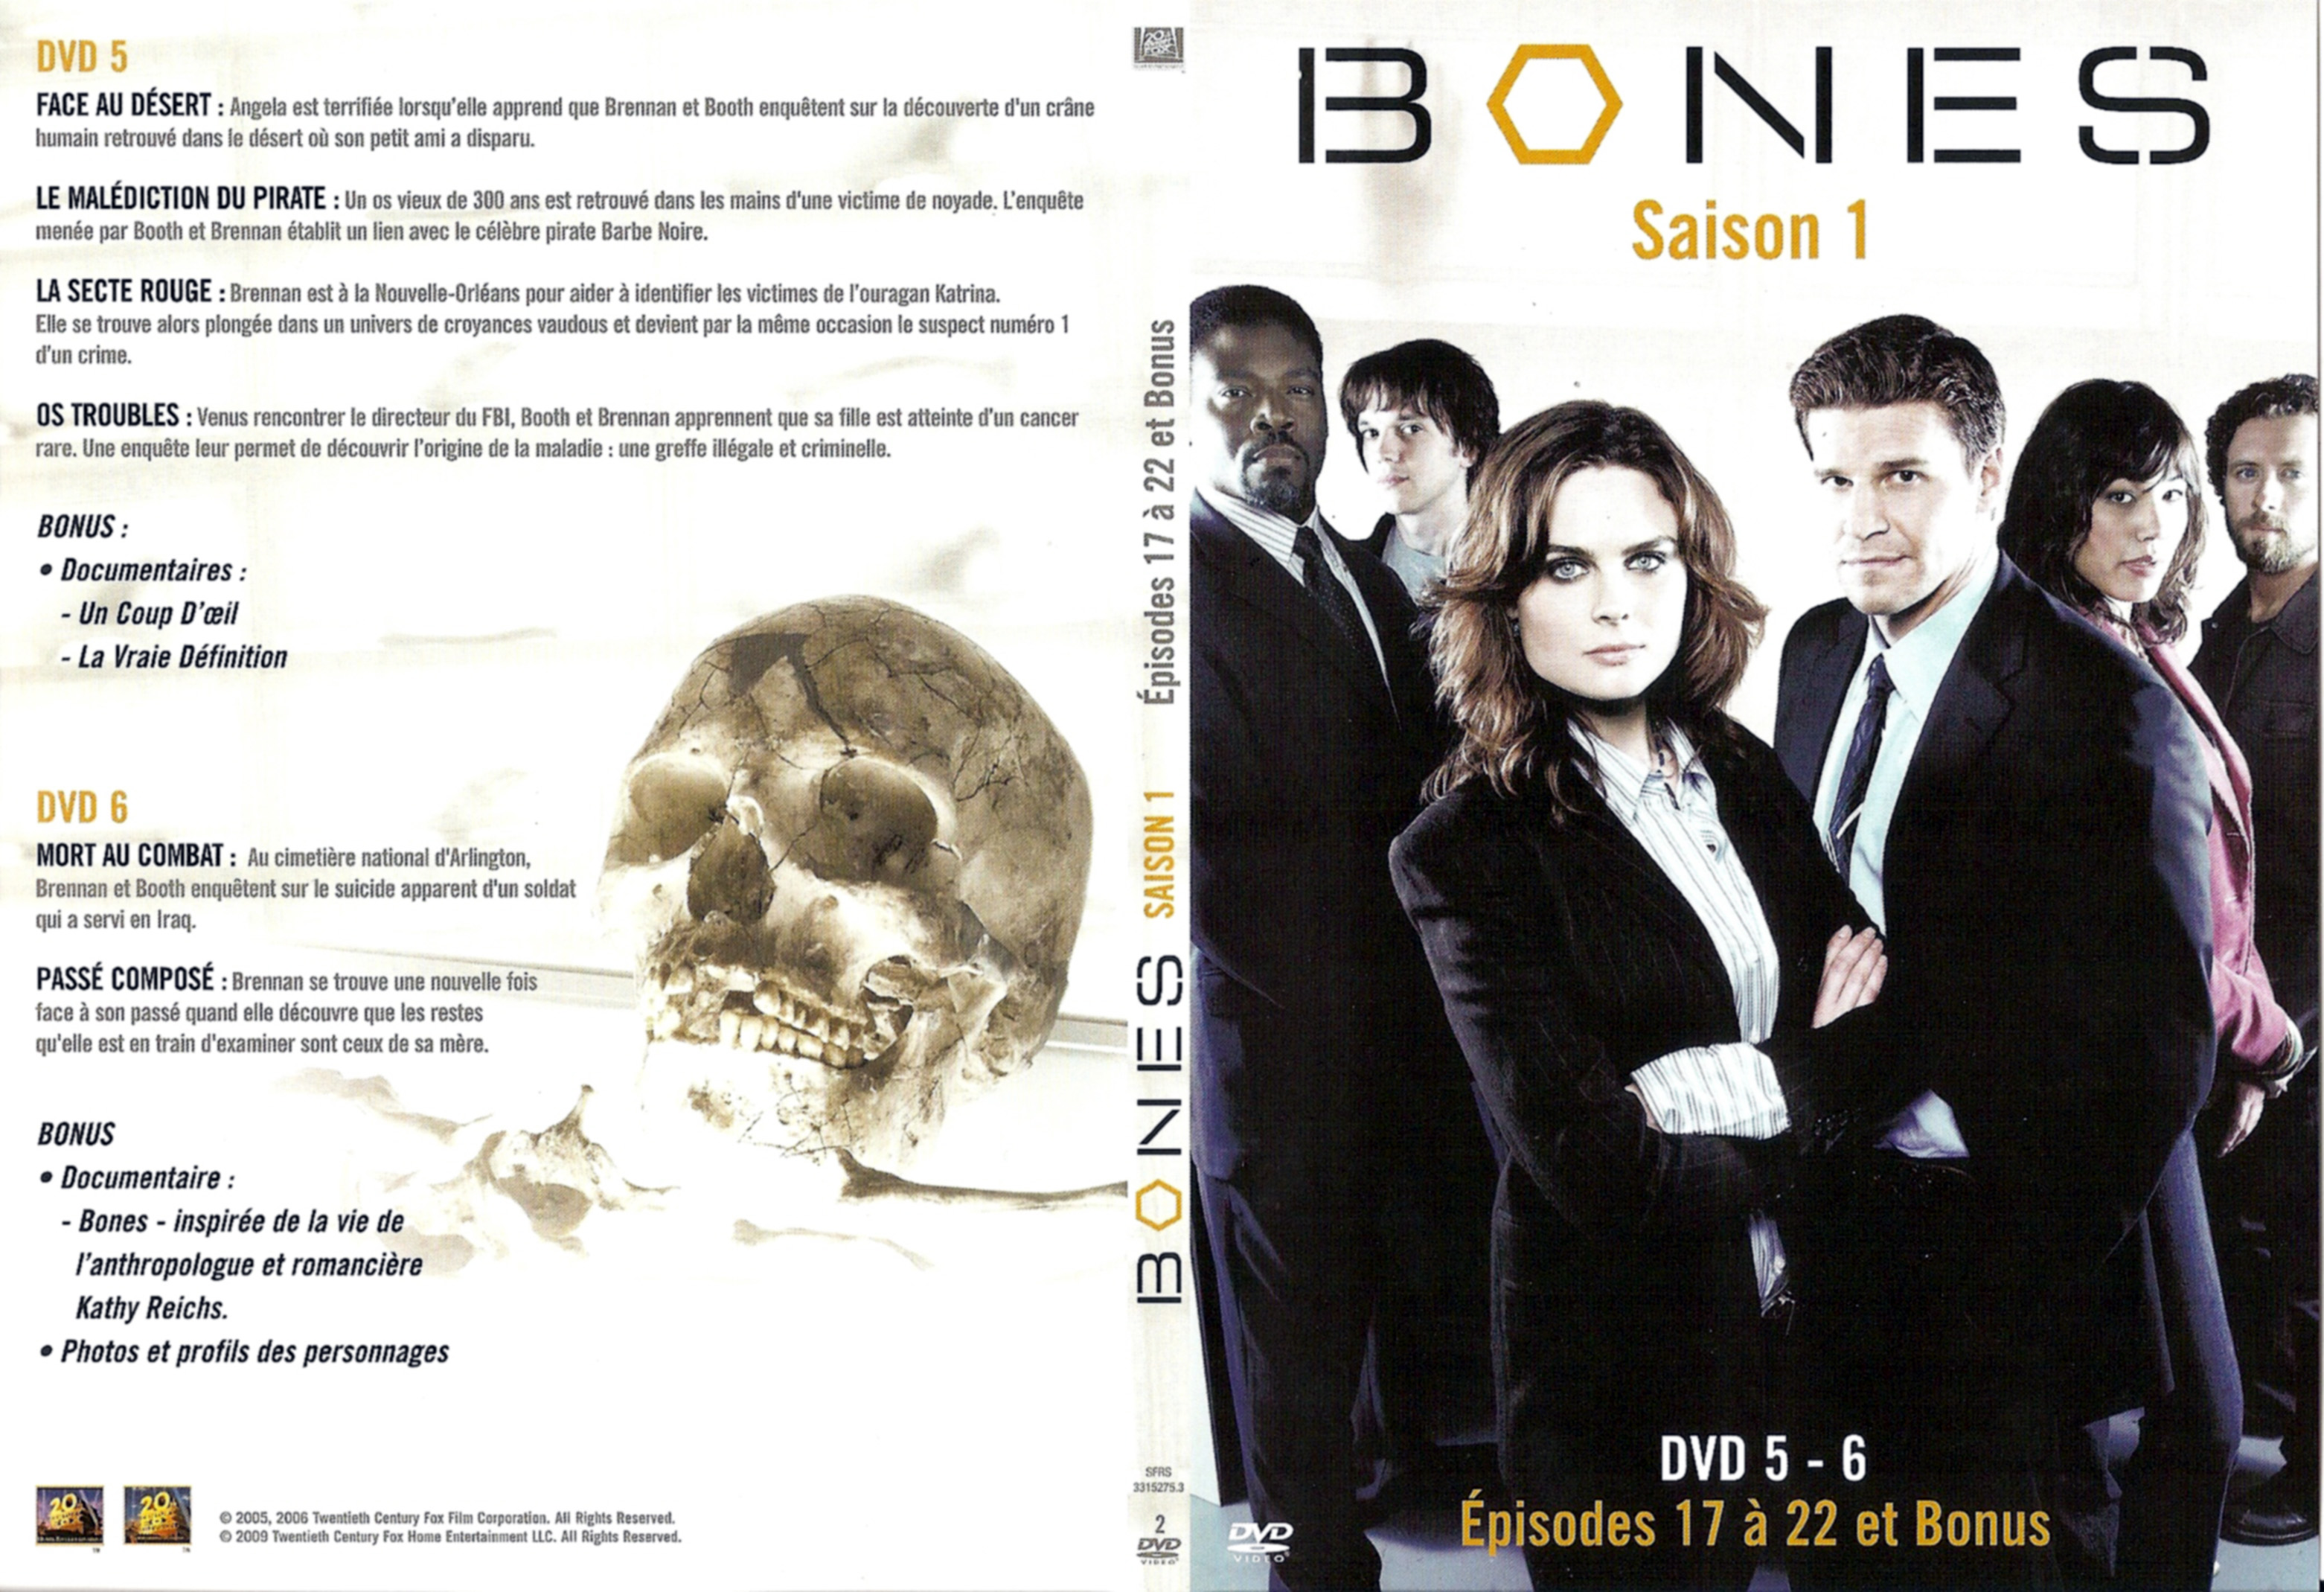 Jaquette DVD Bones Saison 1 DVD 3